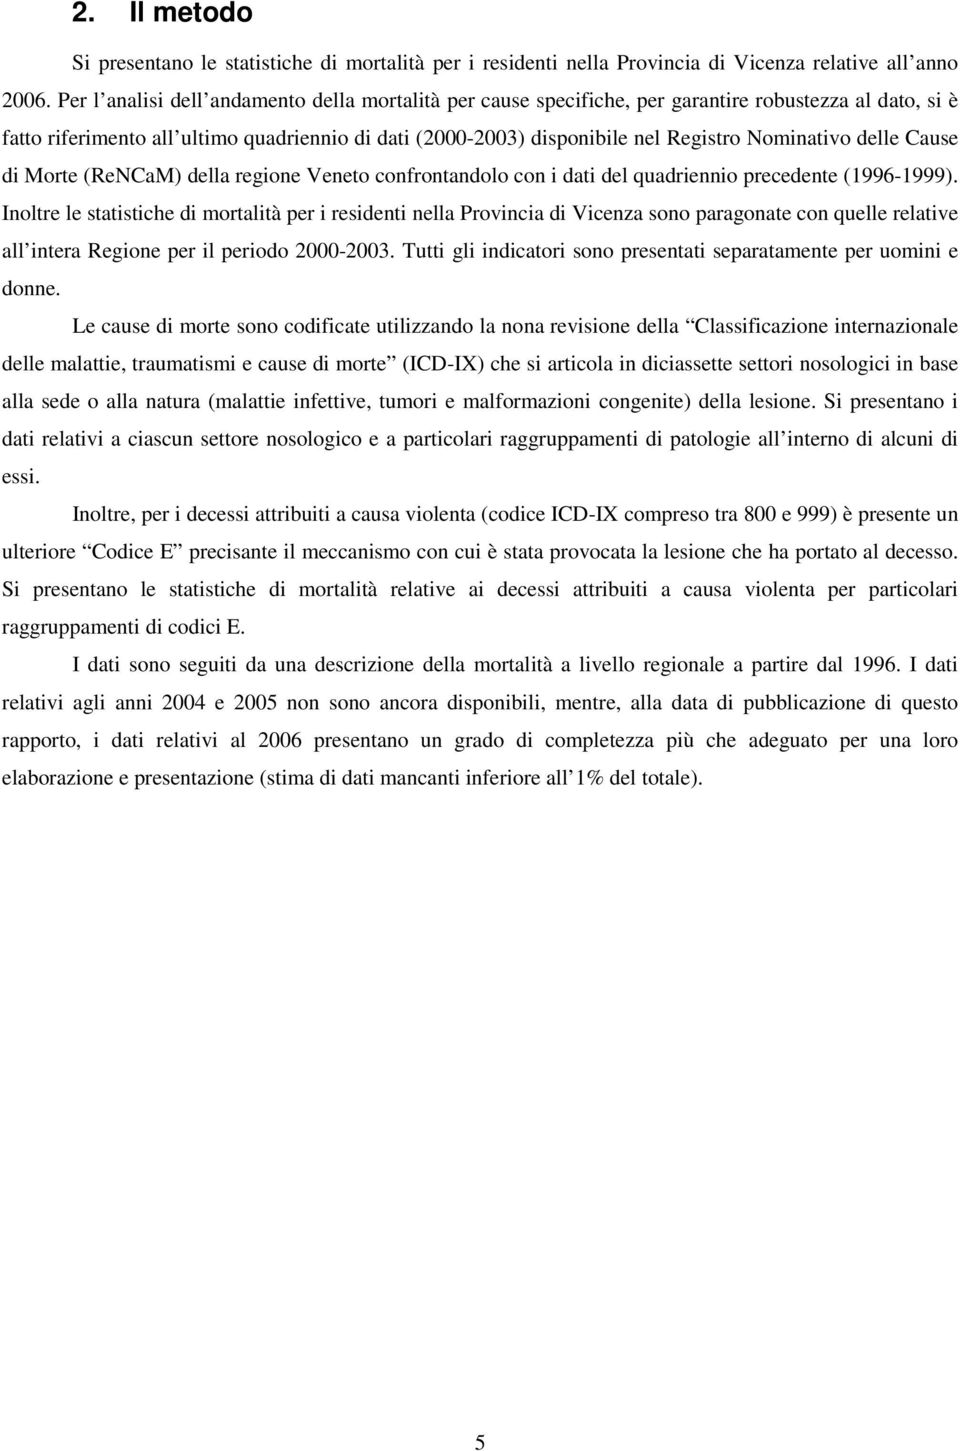 Nominativo delle Cause di Morte (ReNCaM) della regione Veneto confrontandolo con i dati del quadriennio precedente (1996-1999).